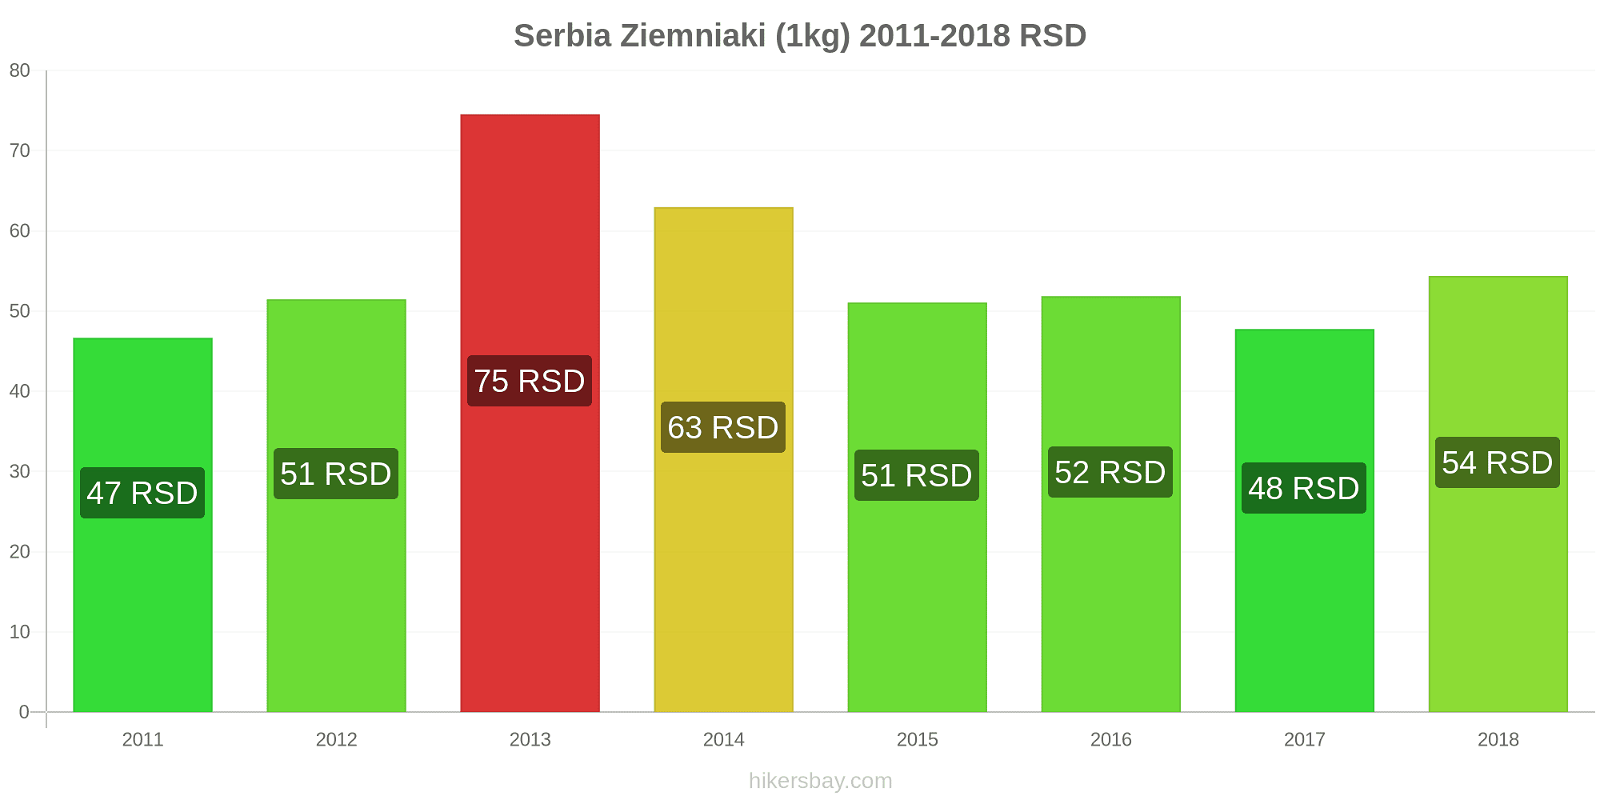 Serbia zmiany cen Ziemniaki (1kg) hikersbay.com